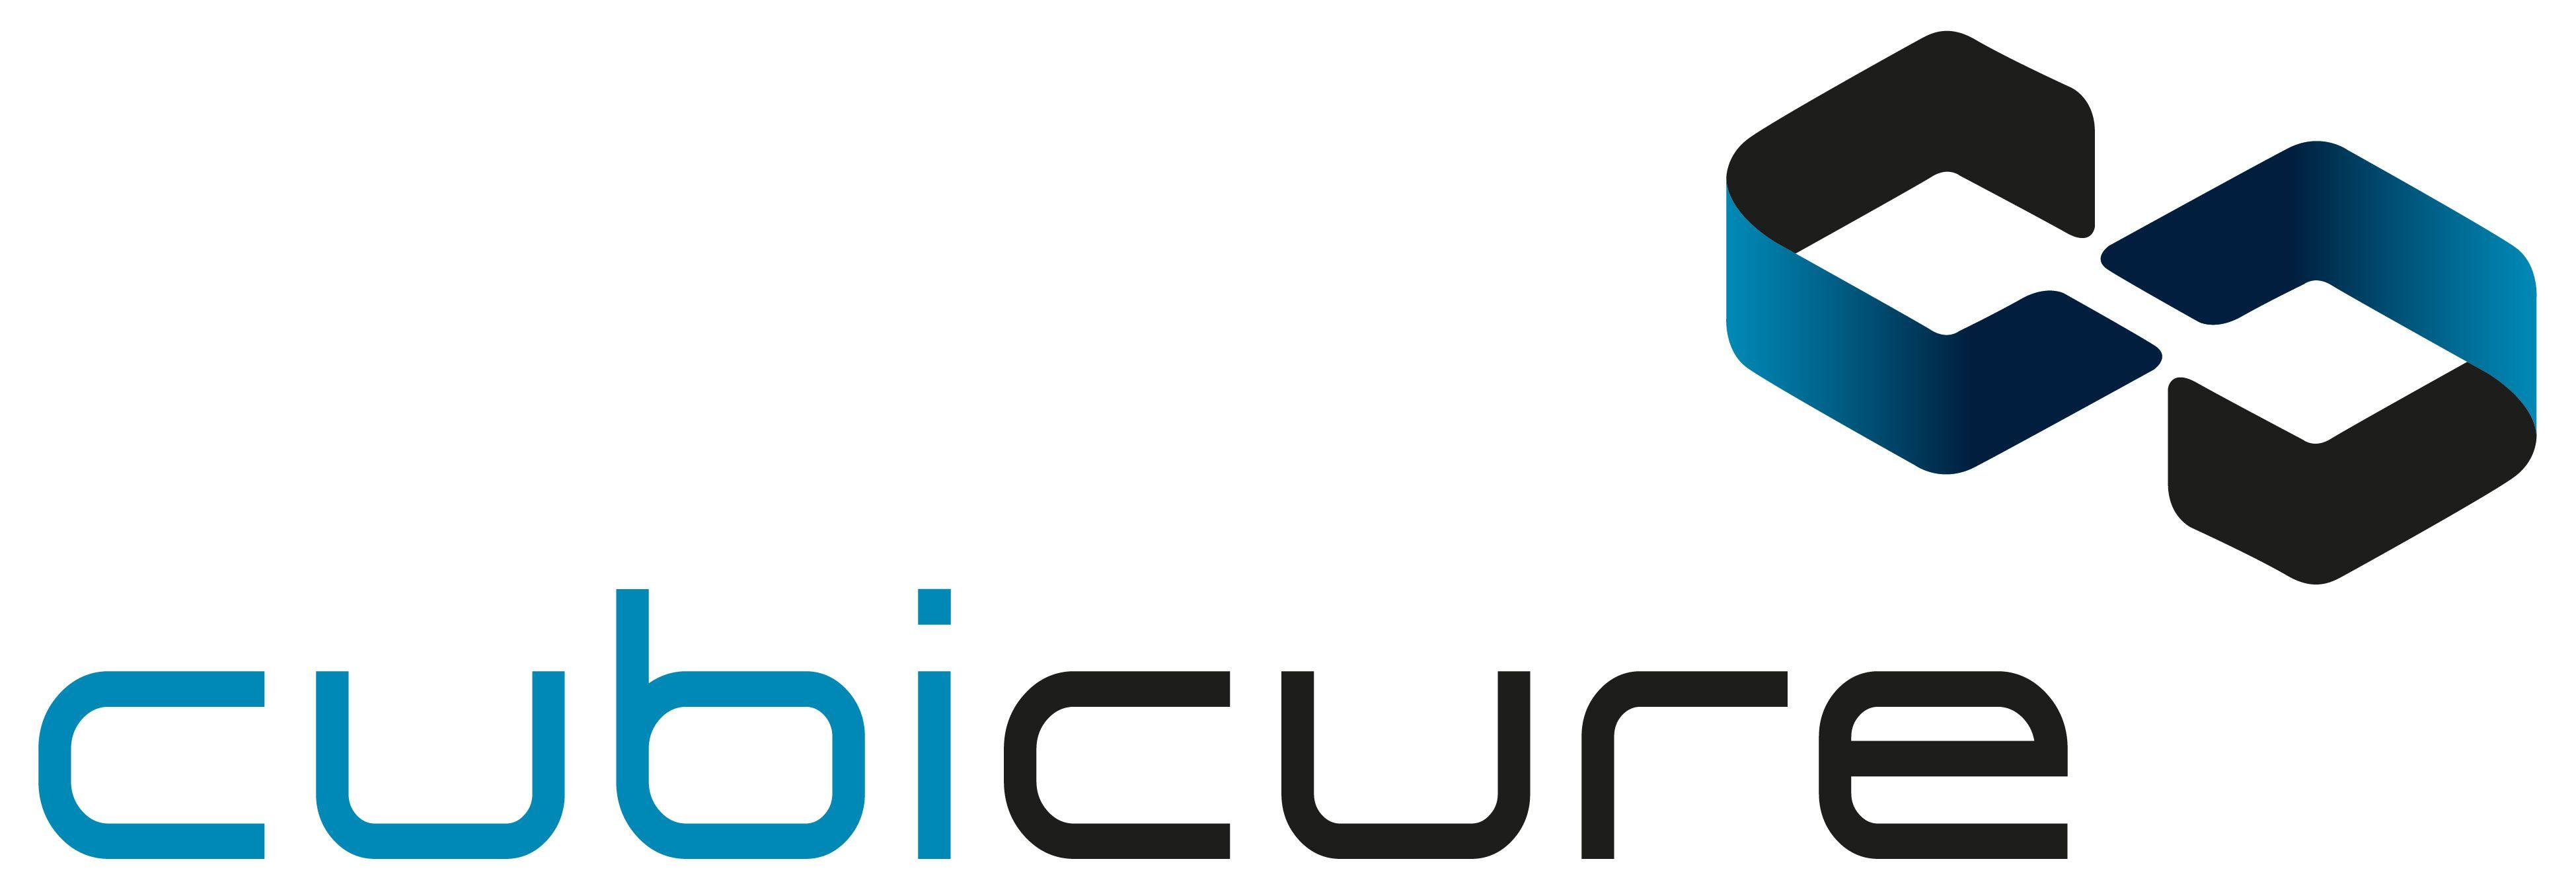 Ure Logo - cubicure & Download